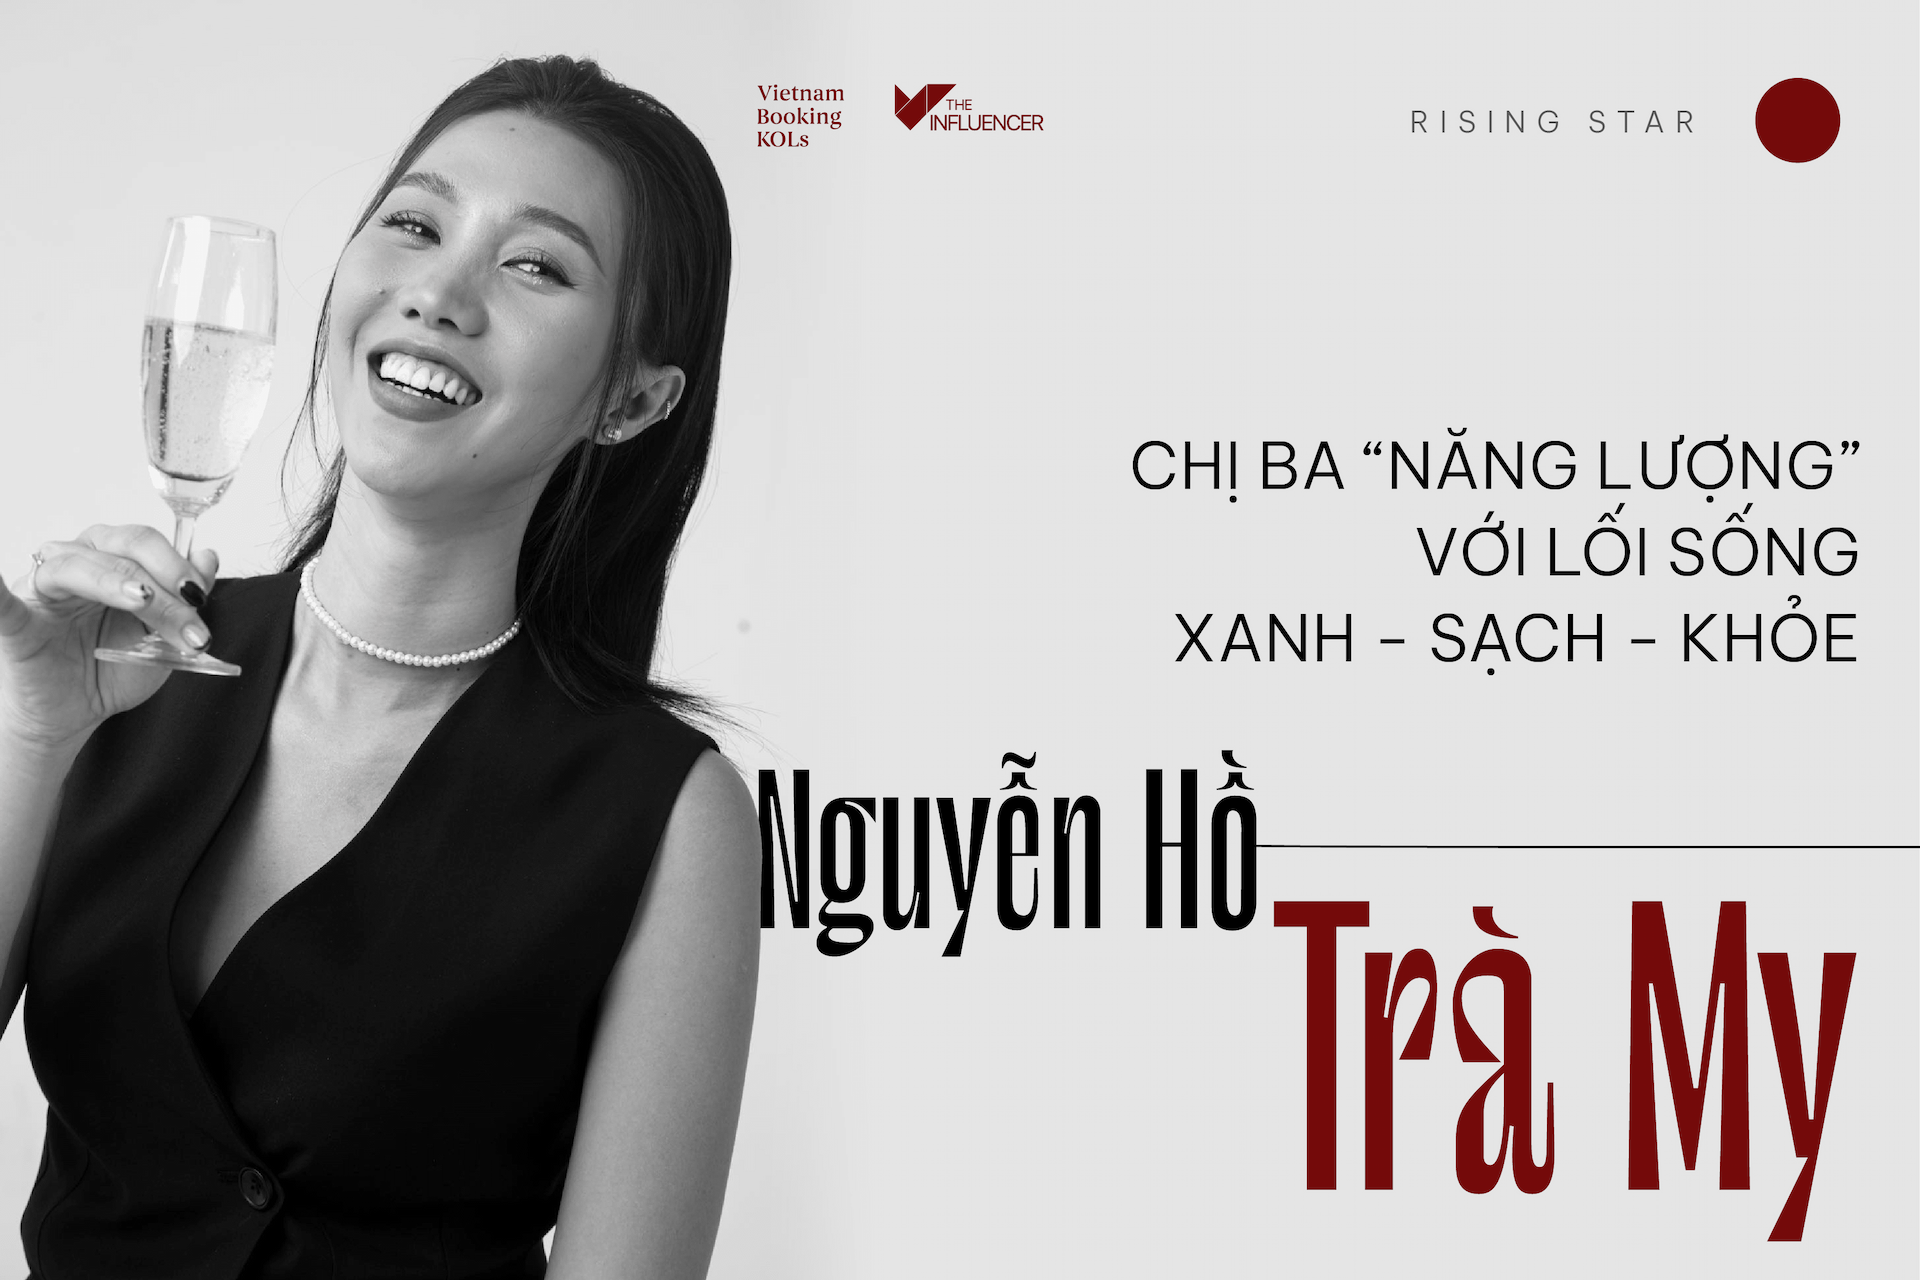 #Risingstar Nguyễn Hồ Trà My - Chị Ba “năng lượng” với lối sống xanh - sạch - khỏe